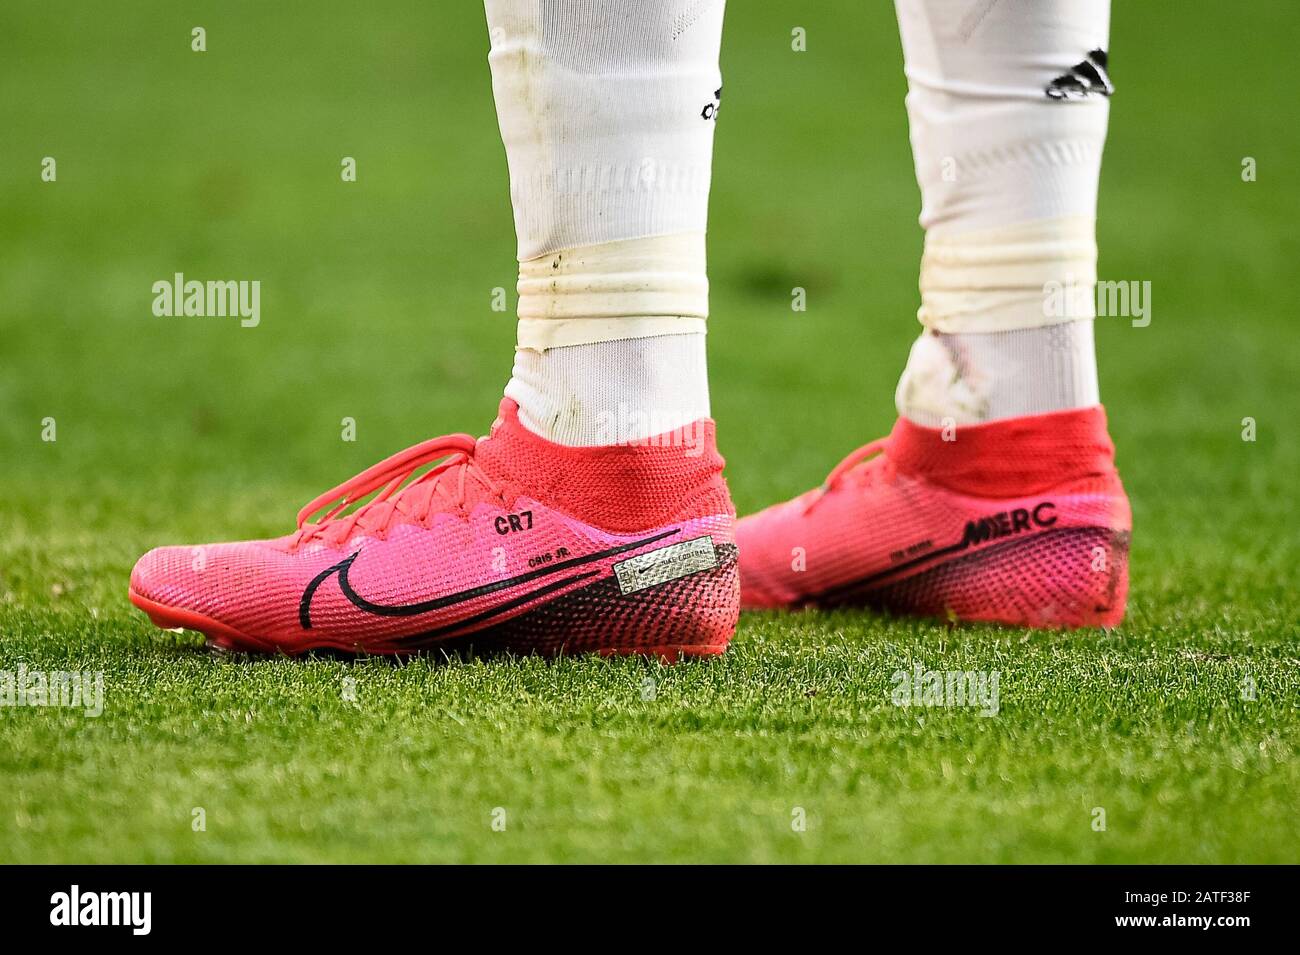 Turín, Italia - 02 de febrero de 2020: Las zapatillas de fútbol Nike  Mercurial Superfly, tejida por Cristiano Ronaldo, del Juventus FC, se  muestran durante la serie UN partido de fútbol entre